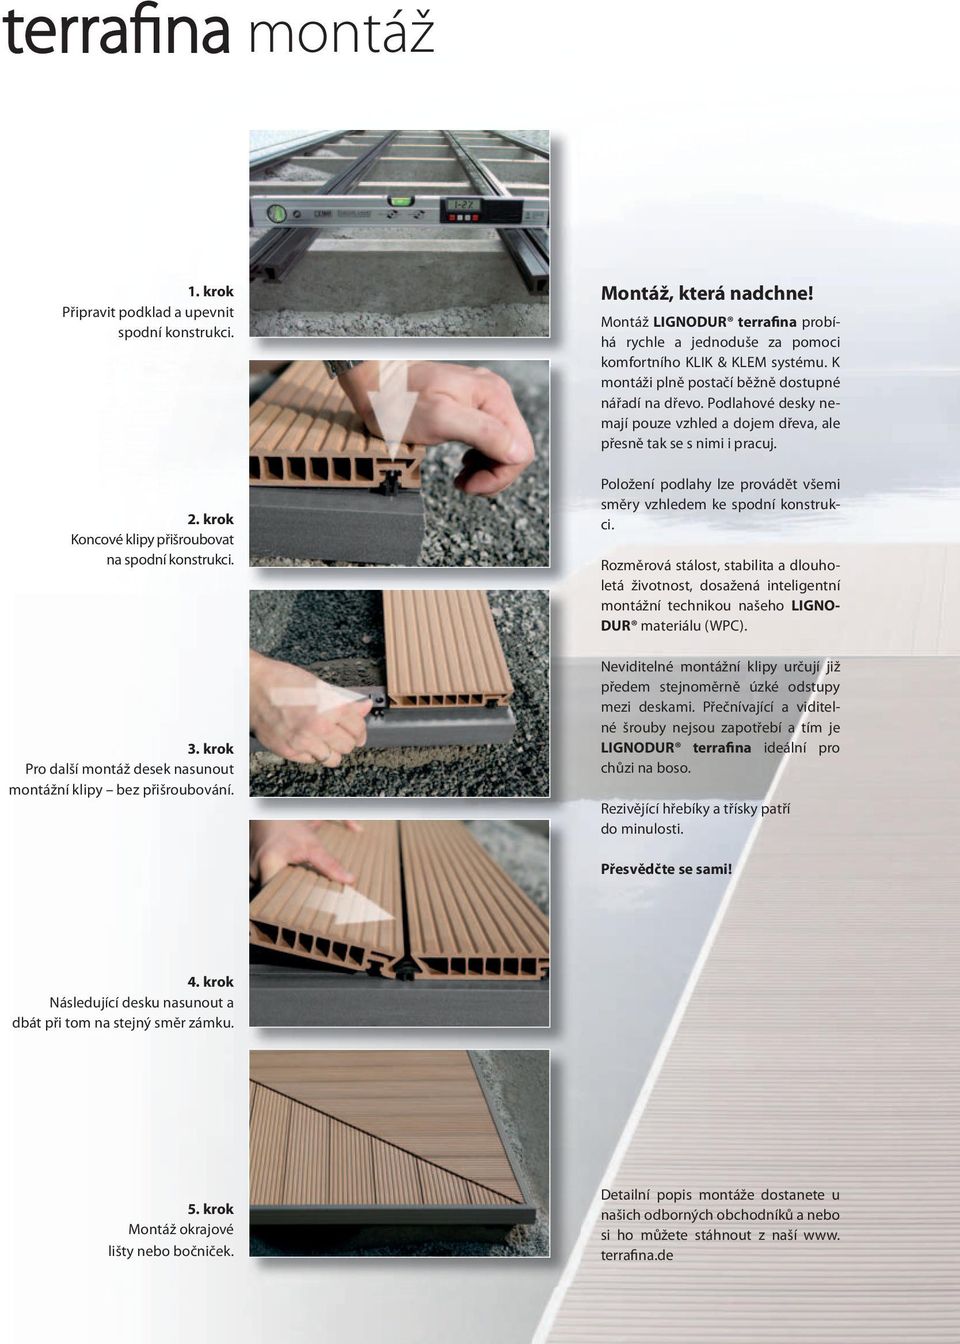 K montáži plně postačí běžně dostupné nářadí na dřevo. Podlahové desky nemají pouze vzhled a dojem dřeva, ale přesně tak se s nimi i pracuj.